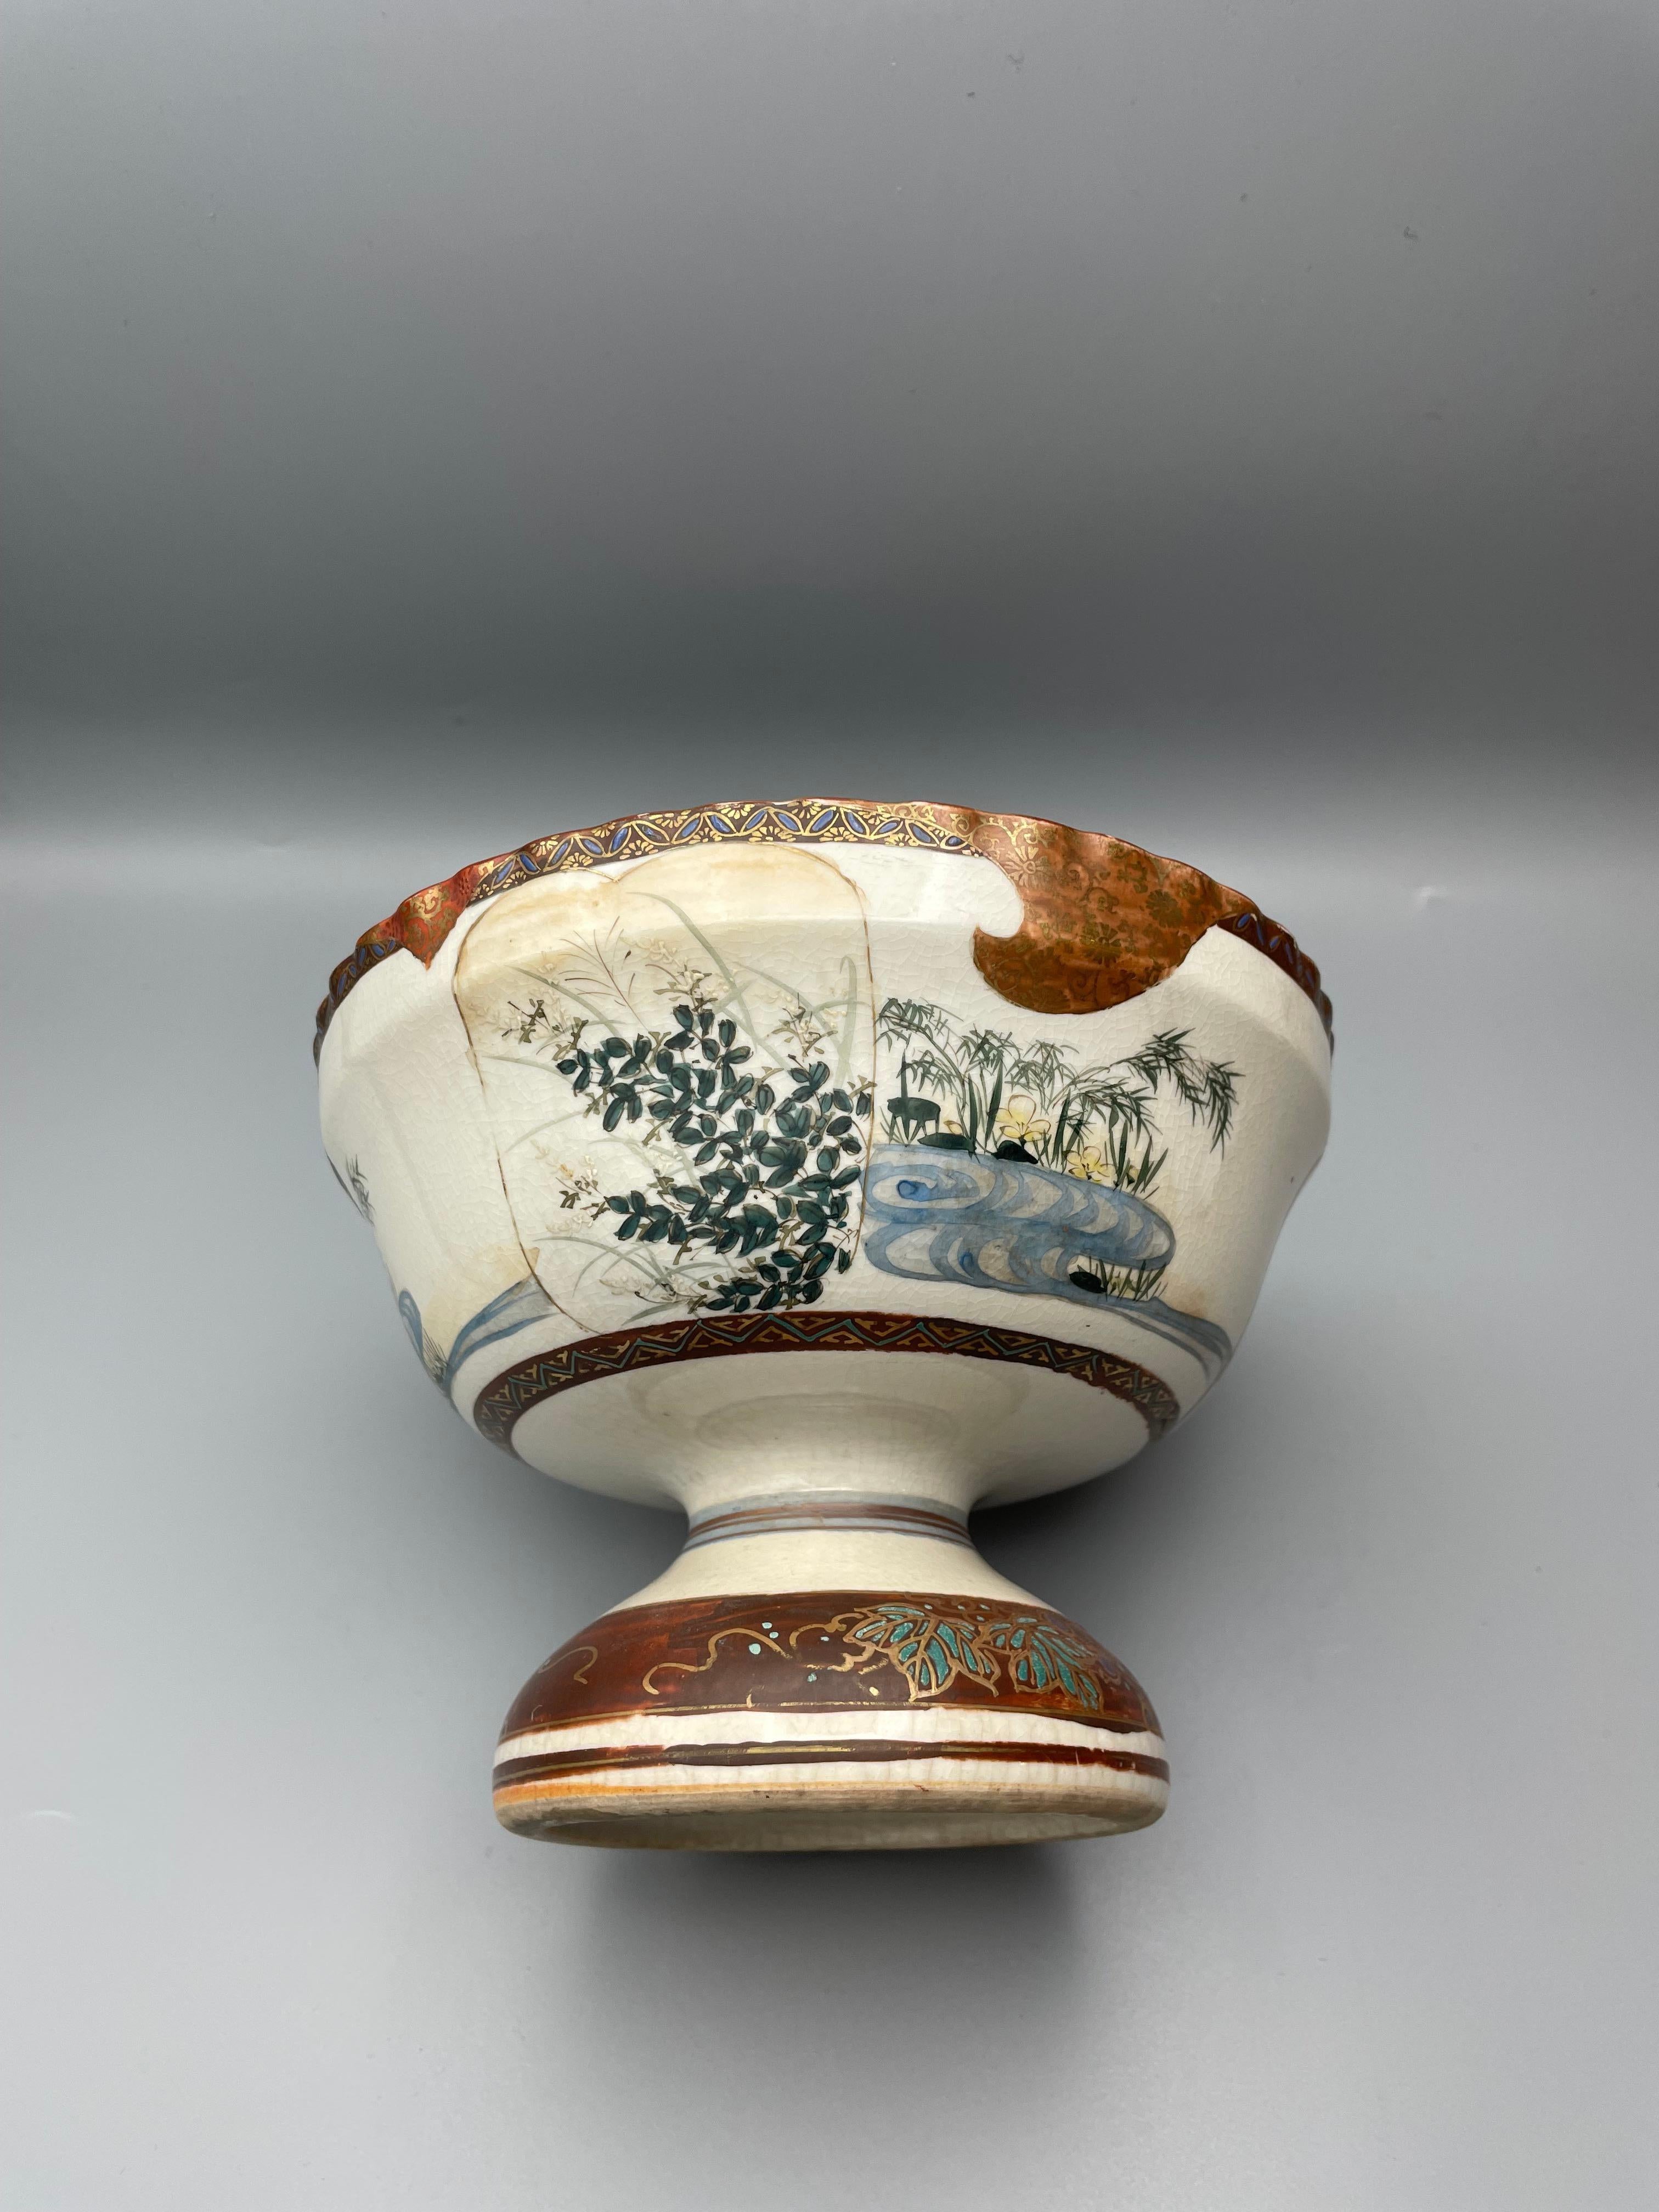 Porcelain Japanese Antique Bowl of Kutani-Yaki with Goldfish 1920s Taisho Era